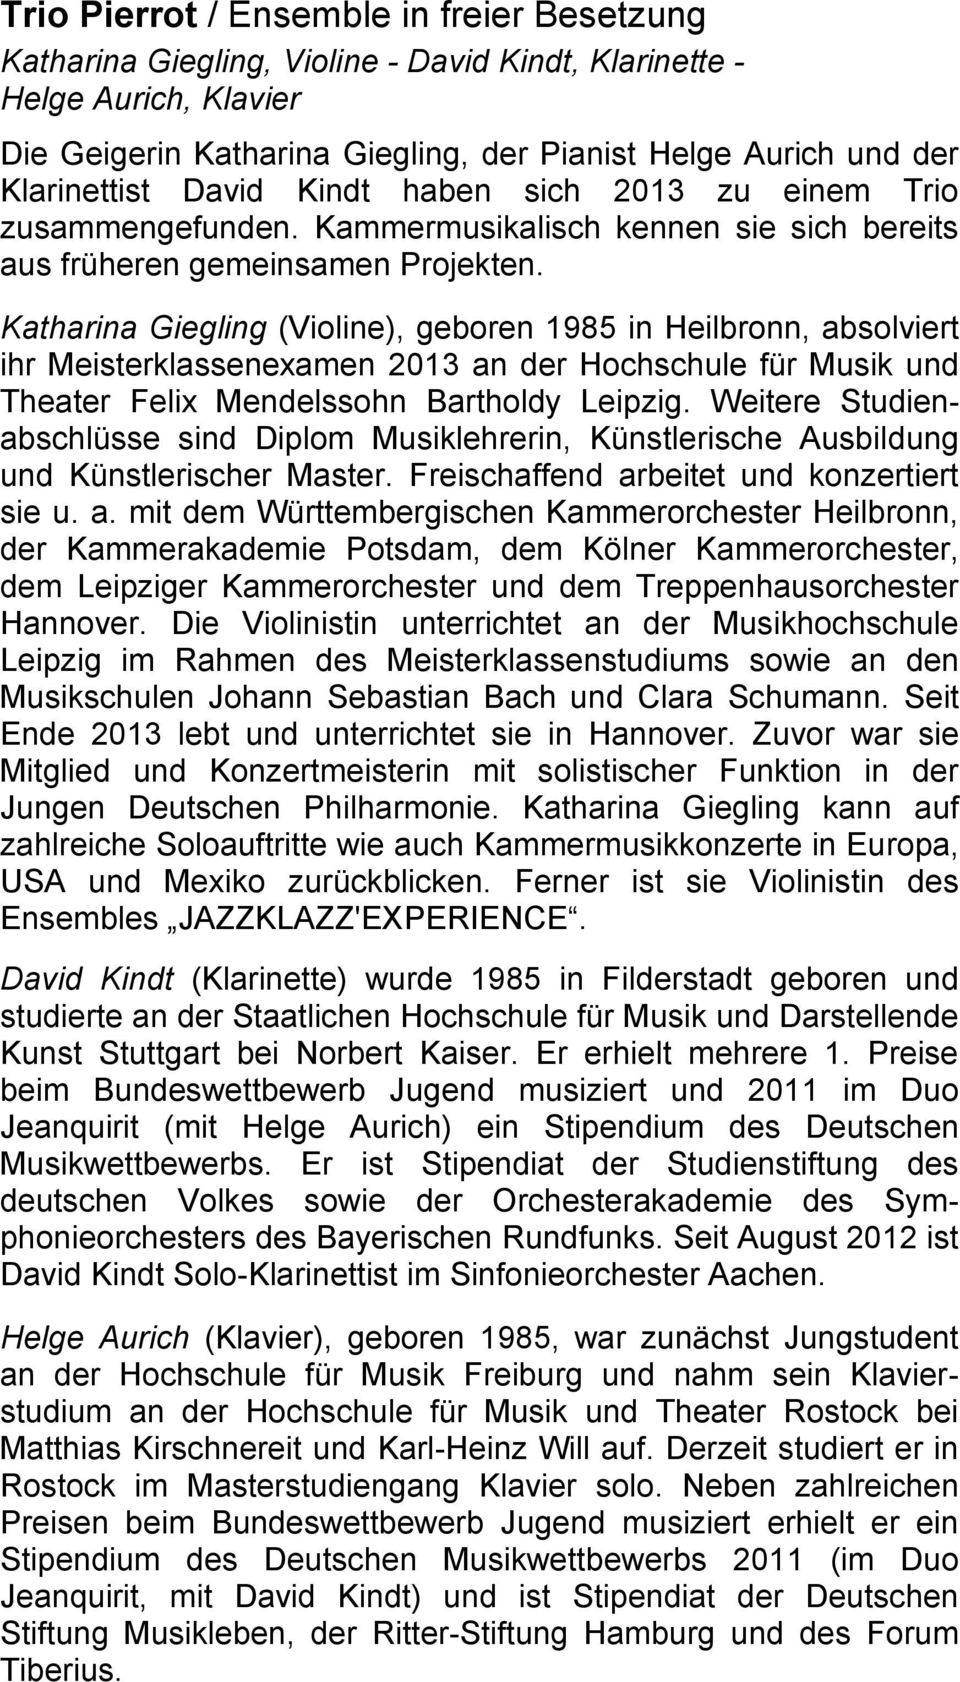 Katharina Giegling (Violine), geboren 1985 in Heilbronn, absolviert ihr Meisterklassenexamen 2013 an der Hochschule für Musik und Theater Felix Mendelssohn Bartholdy Leipzig.